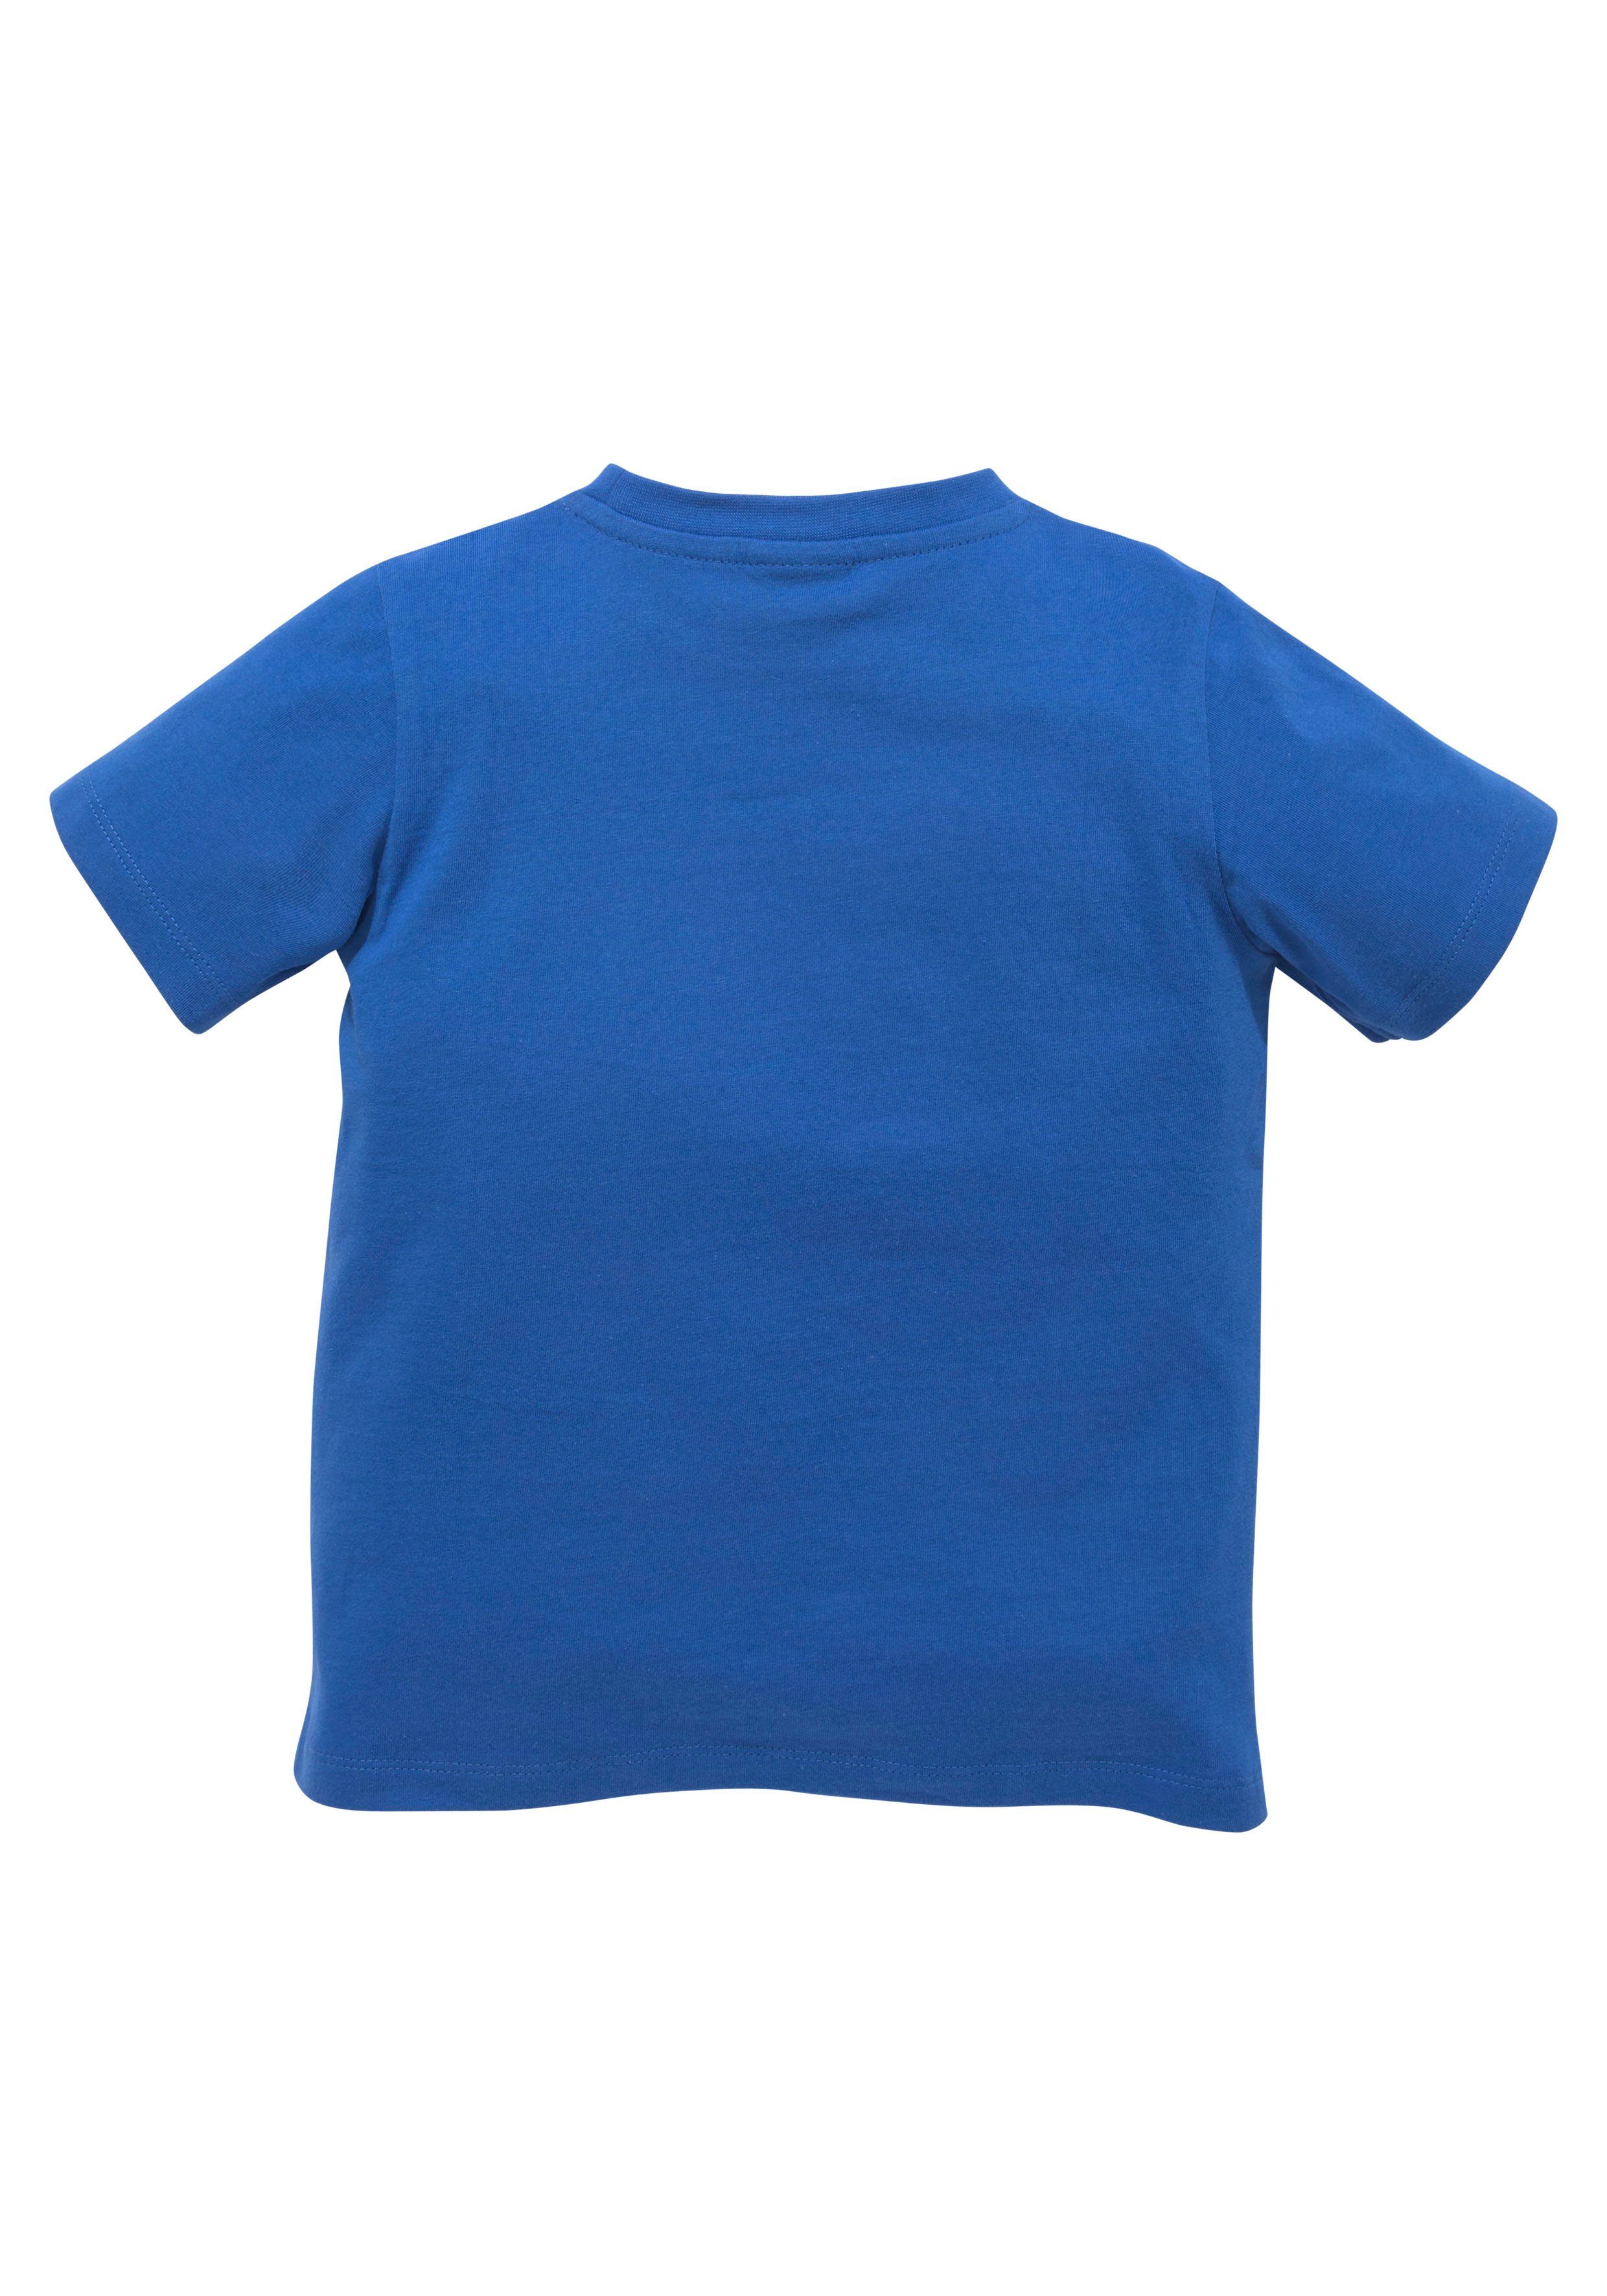 KIDSWORLD TOOOR, T-Shirt Spruch